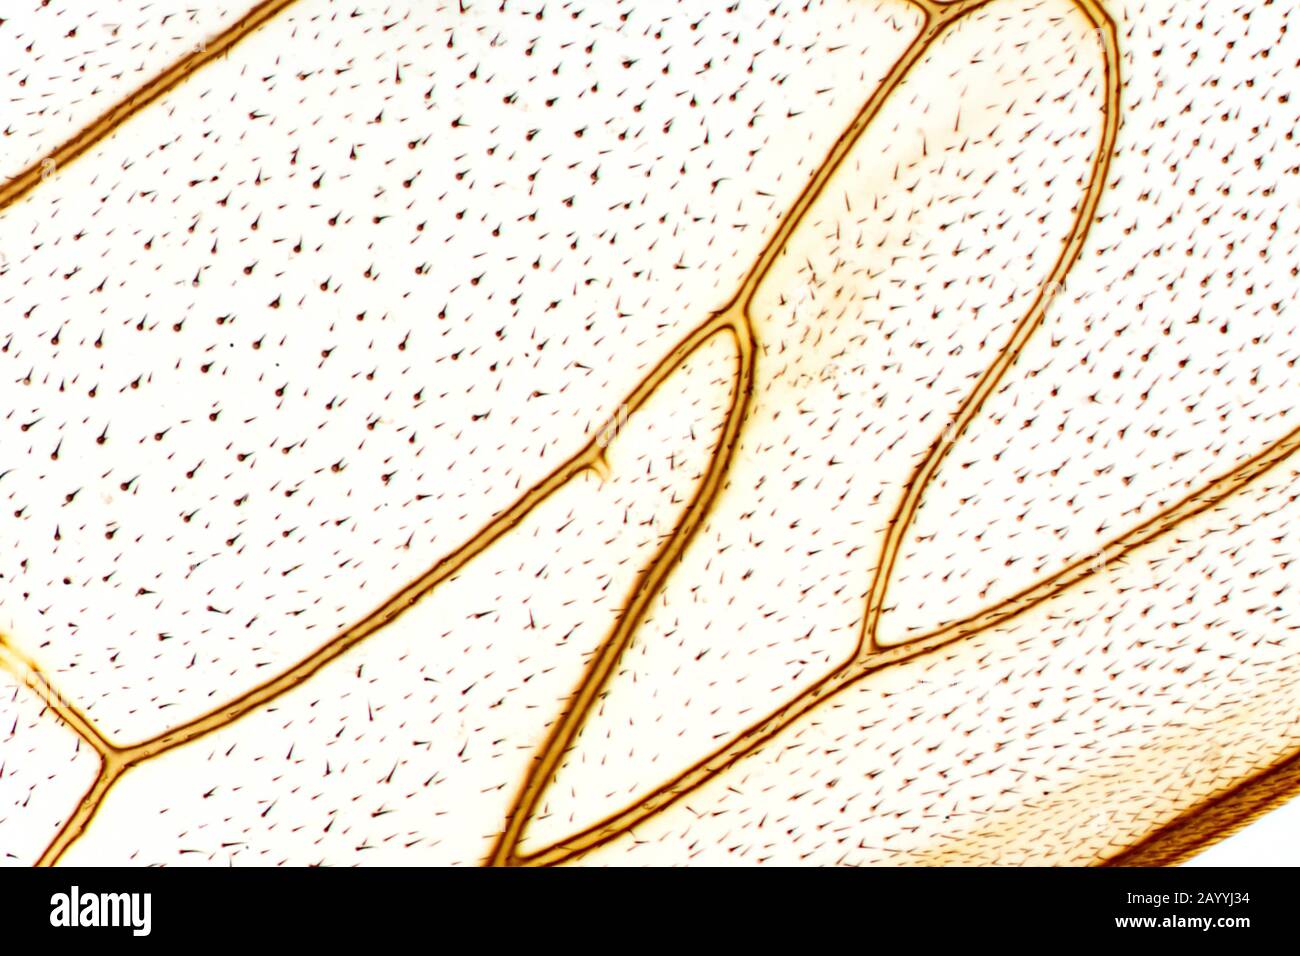 Mosca doméstica (Musca domestica), ala de una mosca doméstica, fotografía de microscopio, Alemania Foto de stock